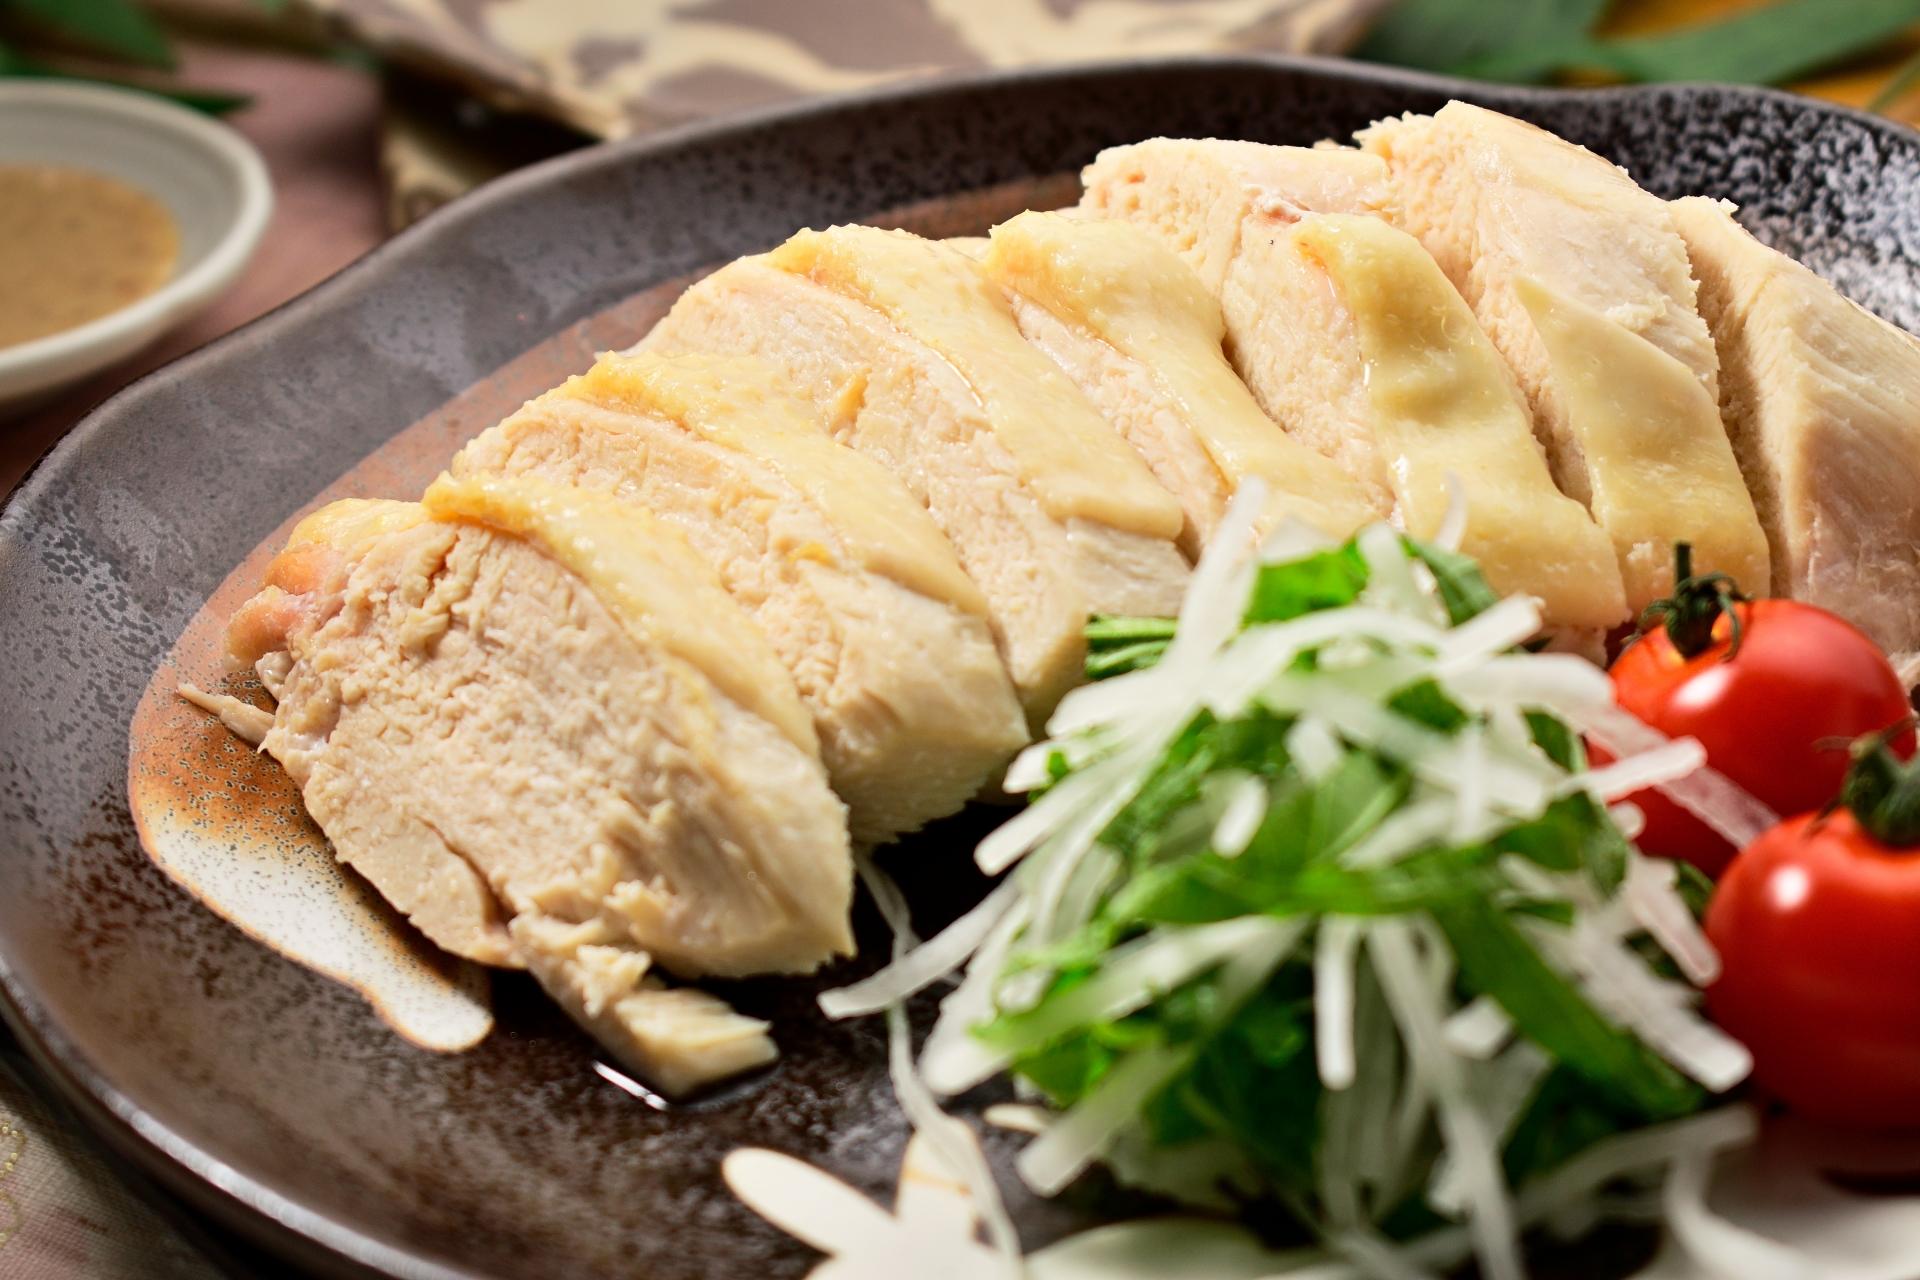 ジョブチューン 蒸し鶏の冷やしそうめんのレシピ 江部敏史 8月8日 きなこのレビューブログ